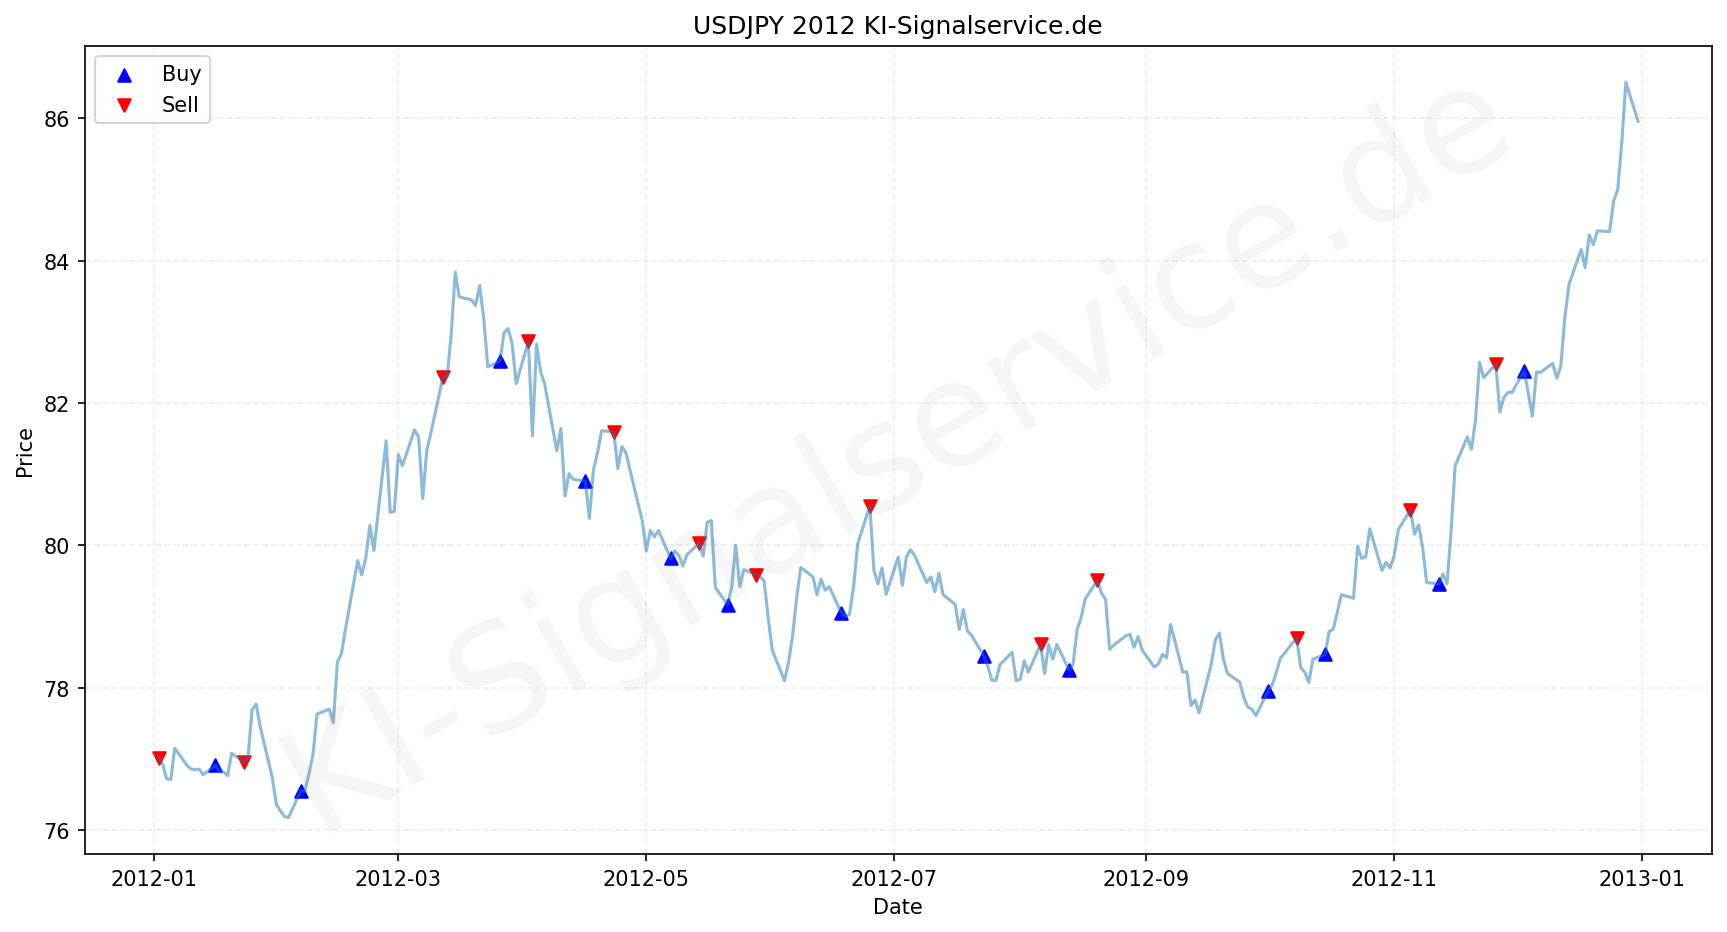 USDJPY Chart - KI Tradingsignale 2012